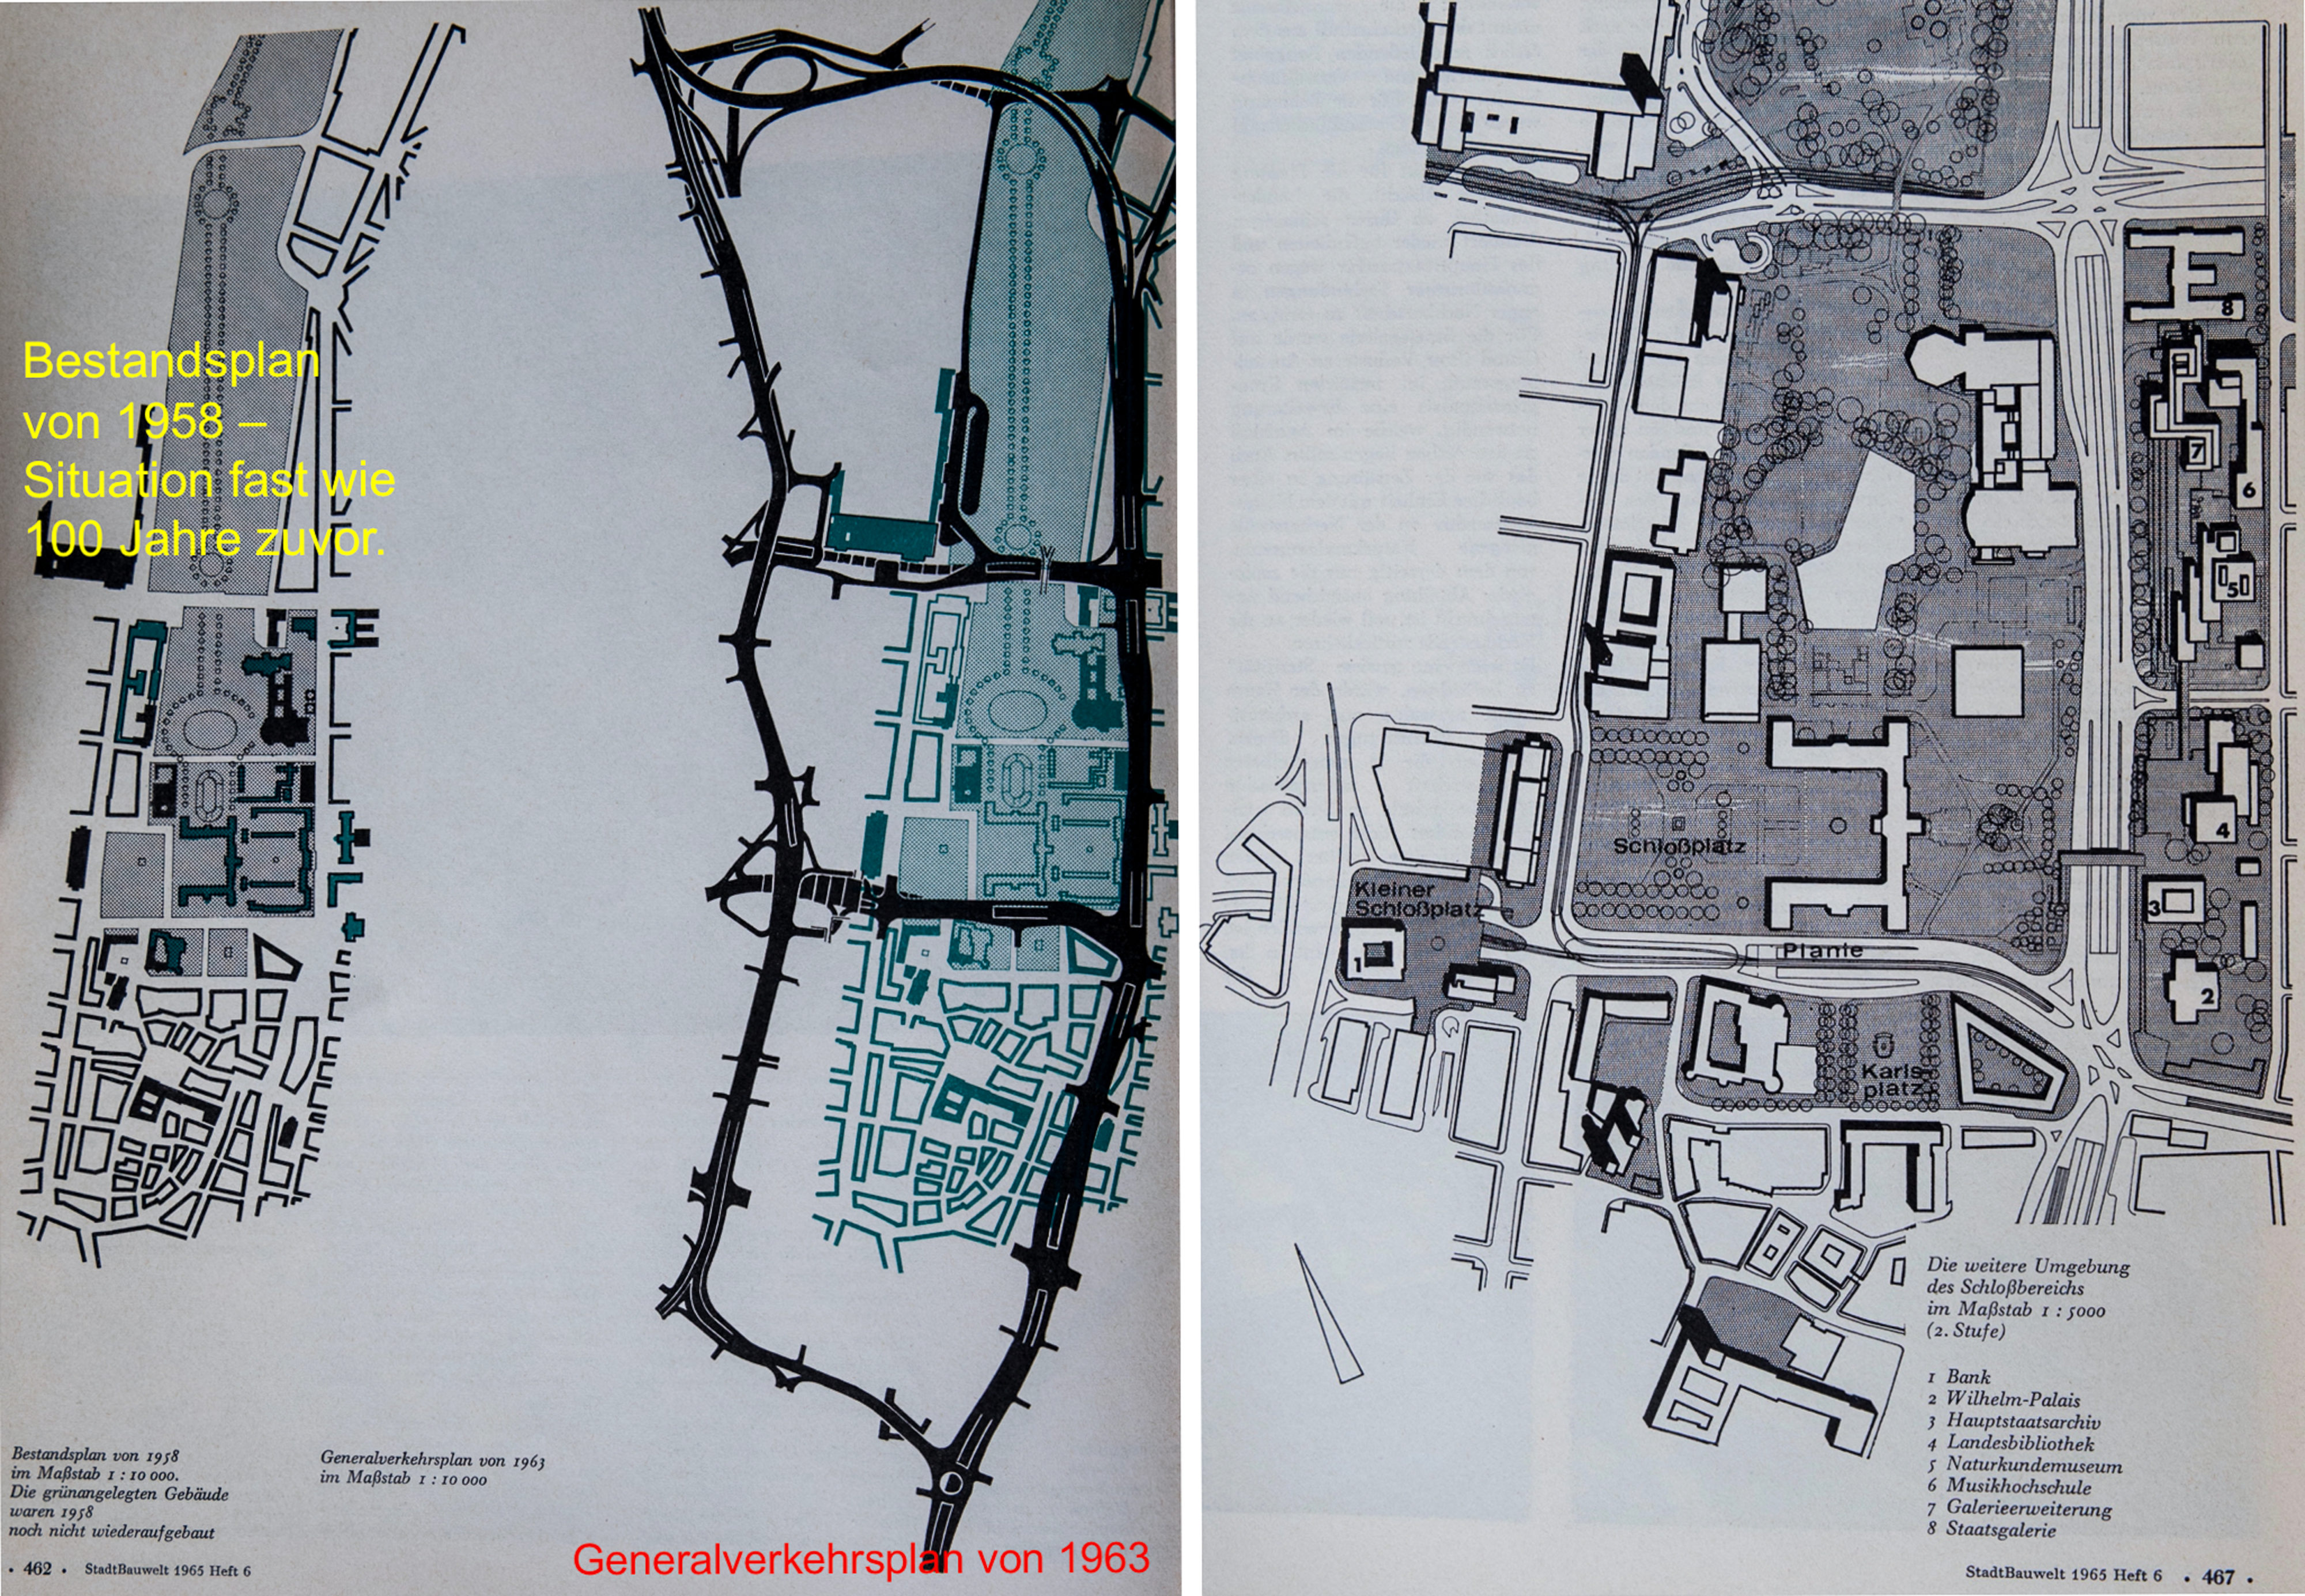 Stuttgart: radikale Verkehrsplanung 1965 zu Lasten bestehender Bauten